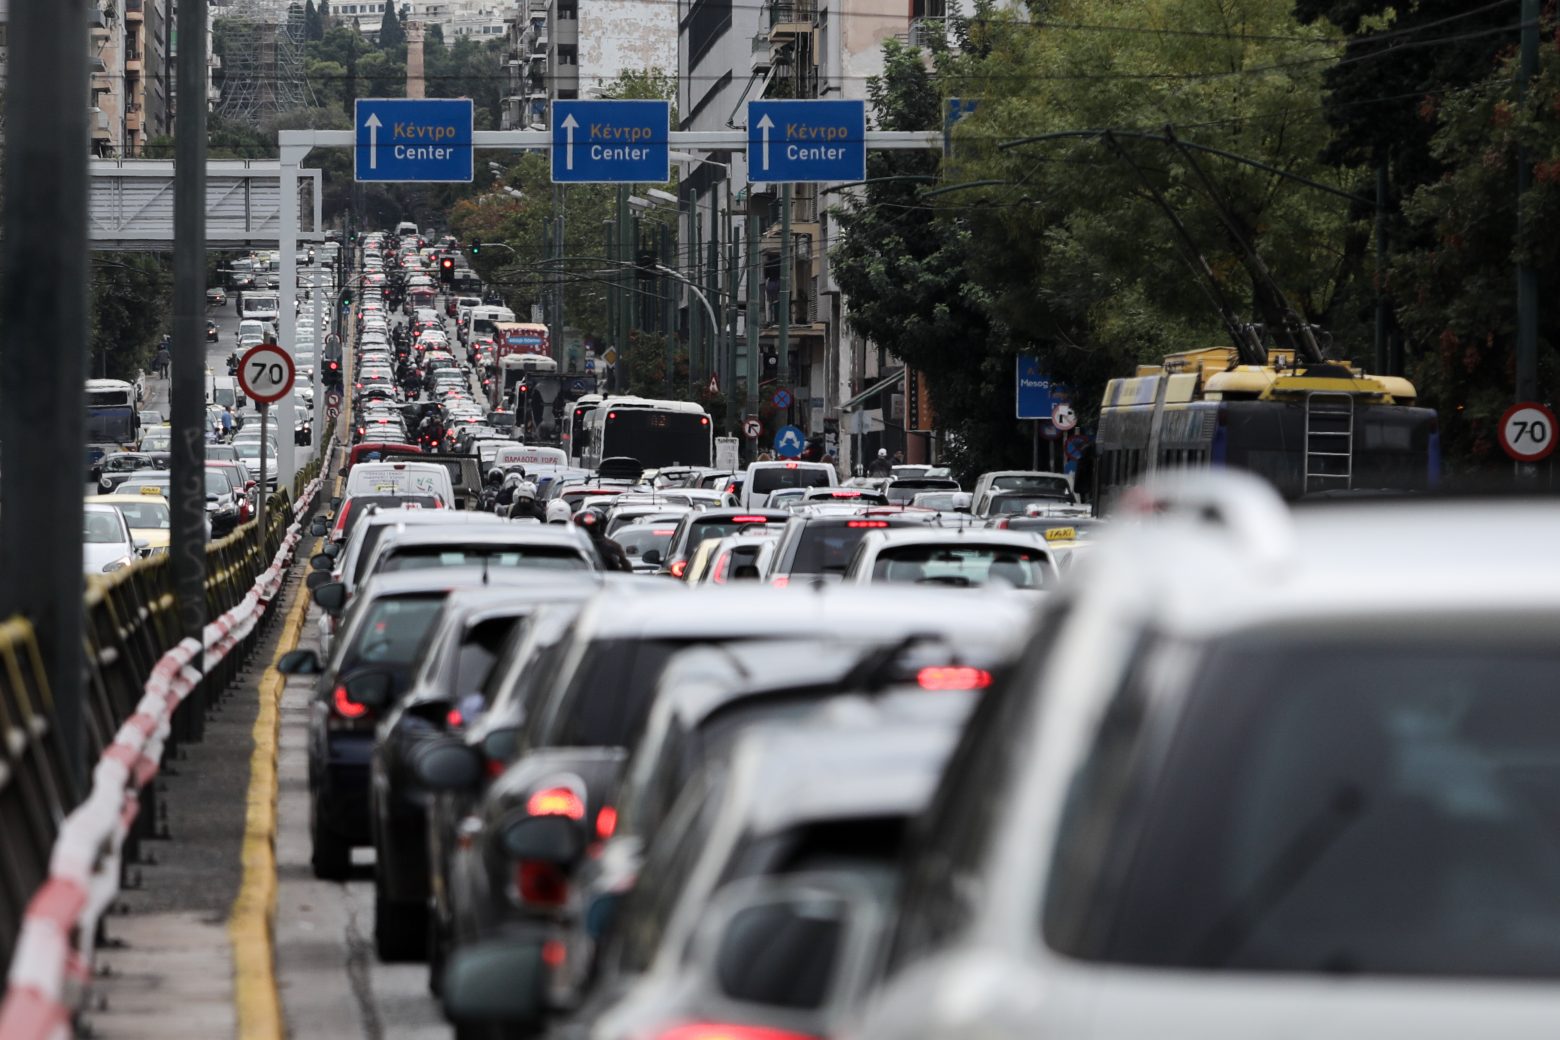 Κίνηση - Άλλη μια μέρα με μποτιλιάρισμα στους δρόμους της Αθήνας - Πού είναι πιο έντονη